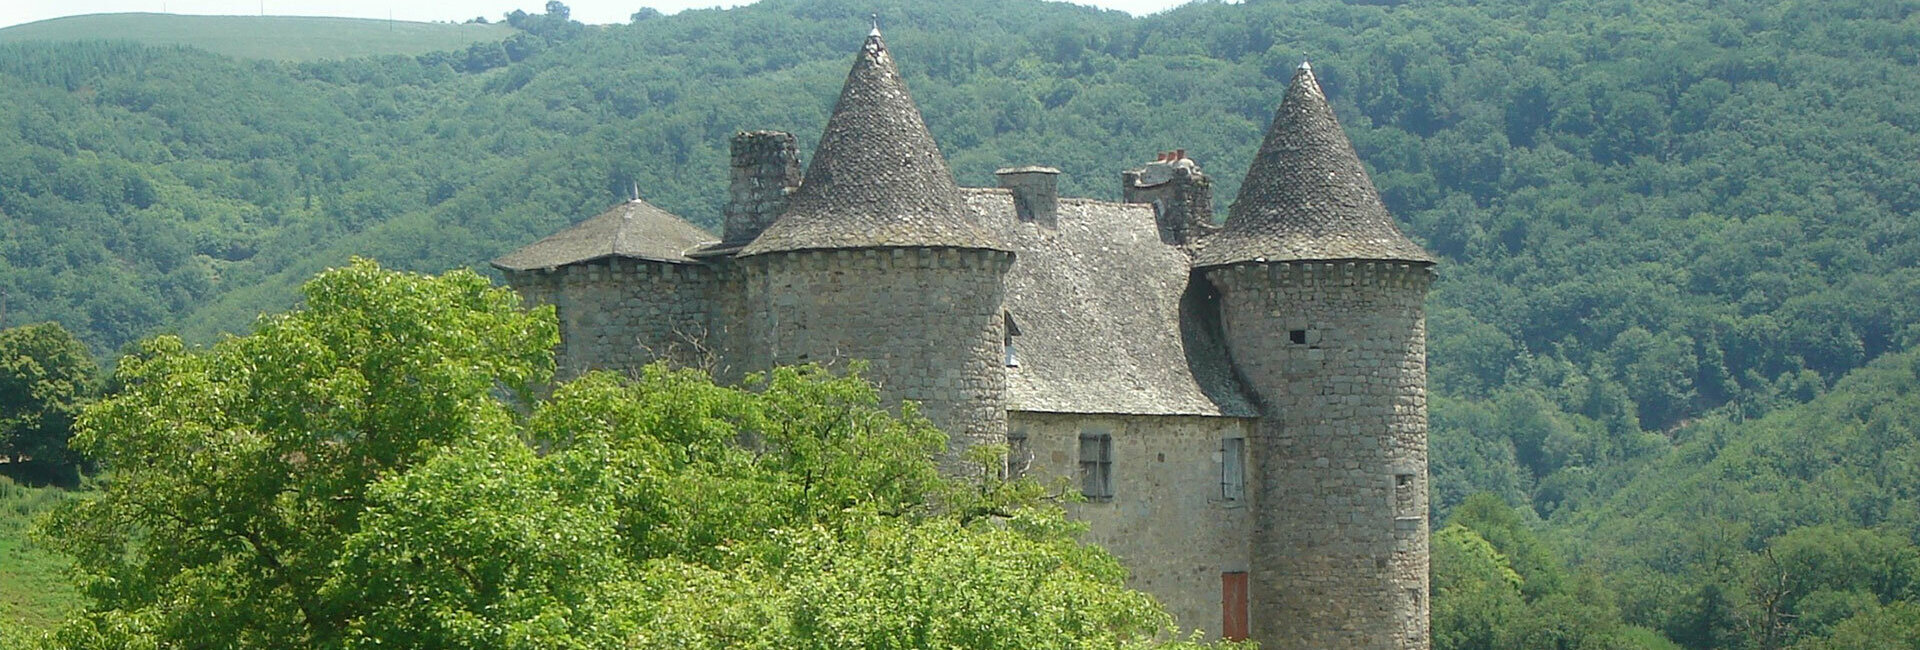 Mairie Commune Sénezergues Cantal Auvergne